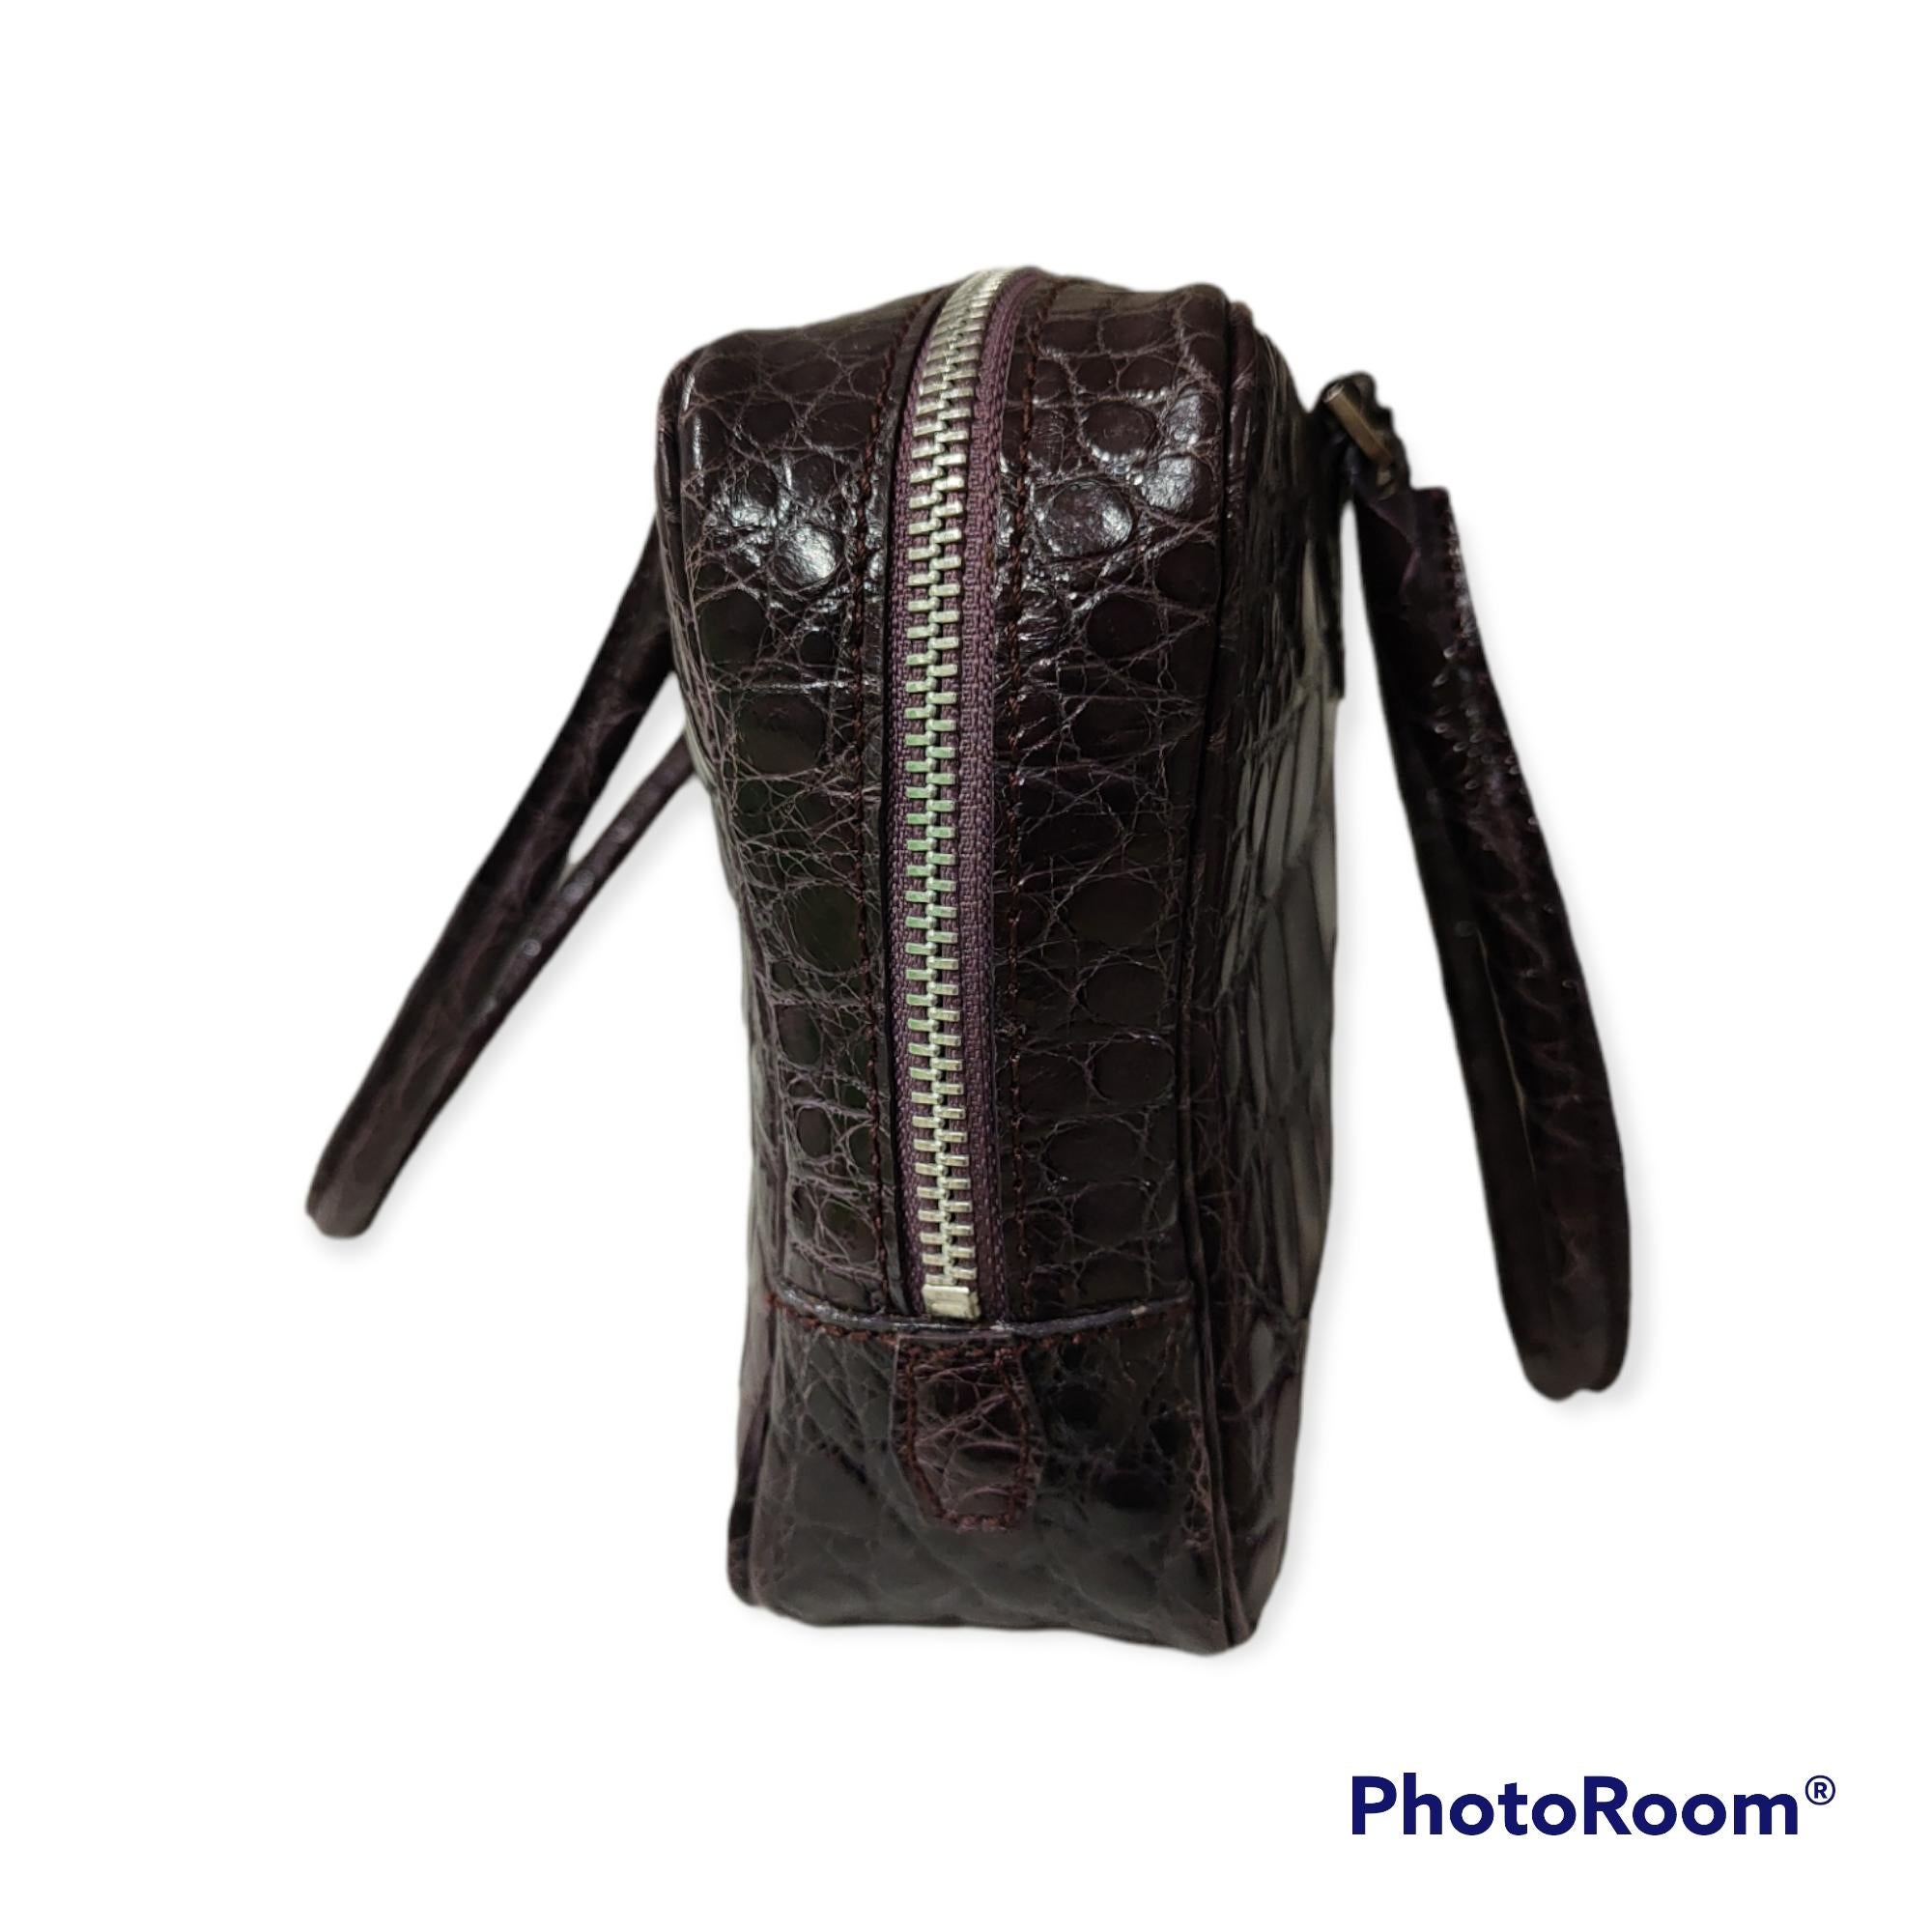 Sirni lila Krokodil Handtasche
vollständig in Italien hergestellt
futter aus Leder
abmessungen: 28*15 cm, 7 cm Tiefe